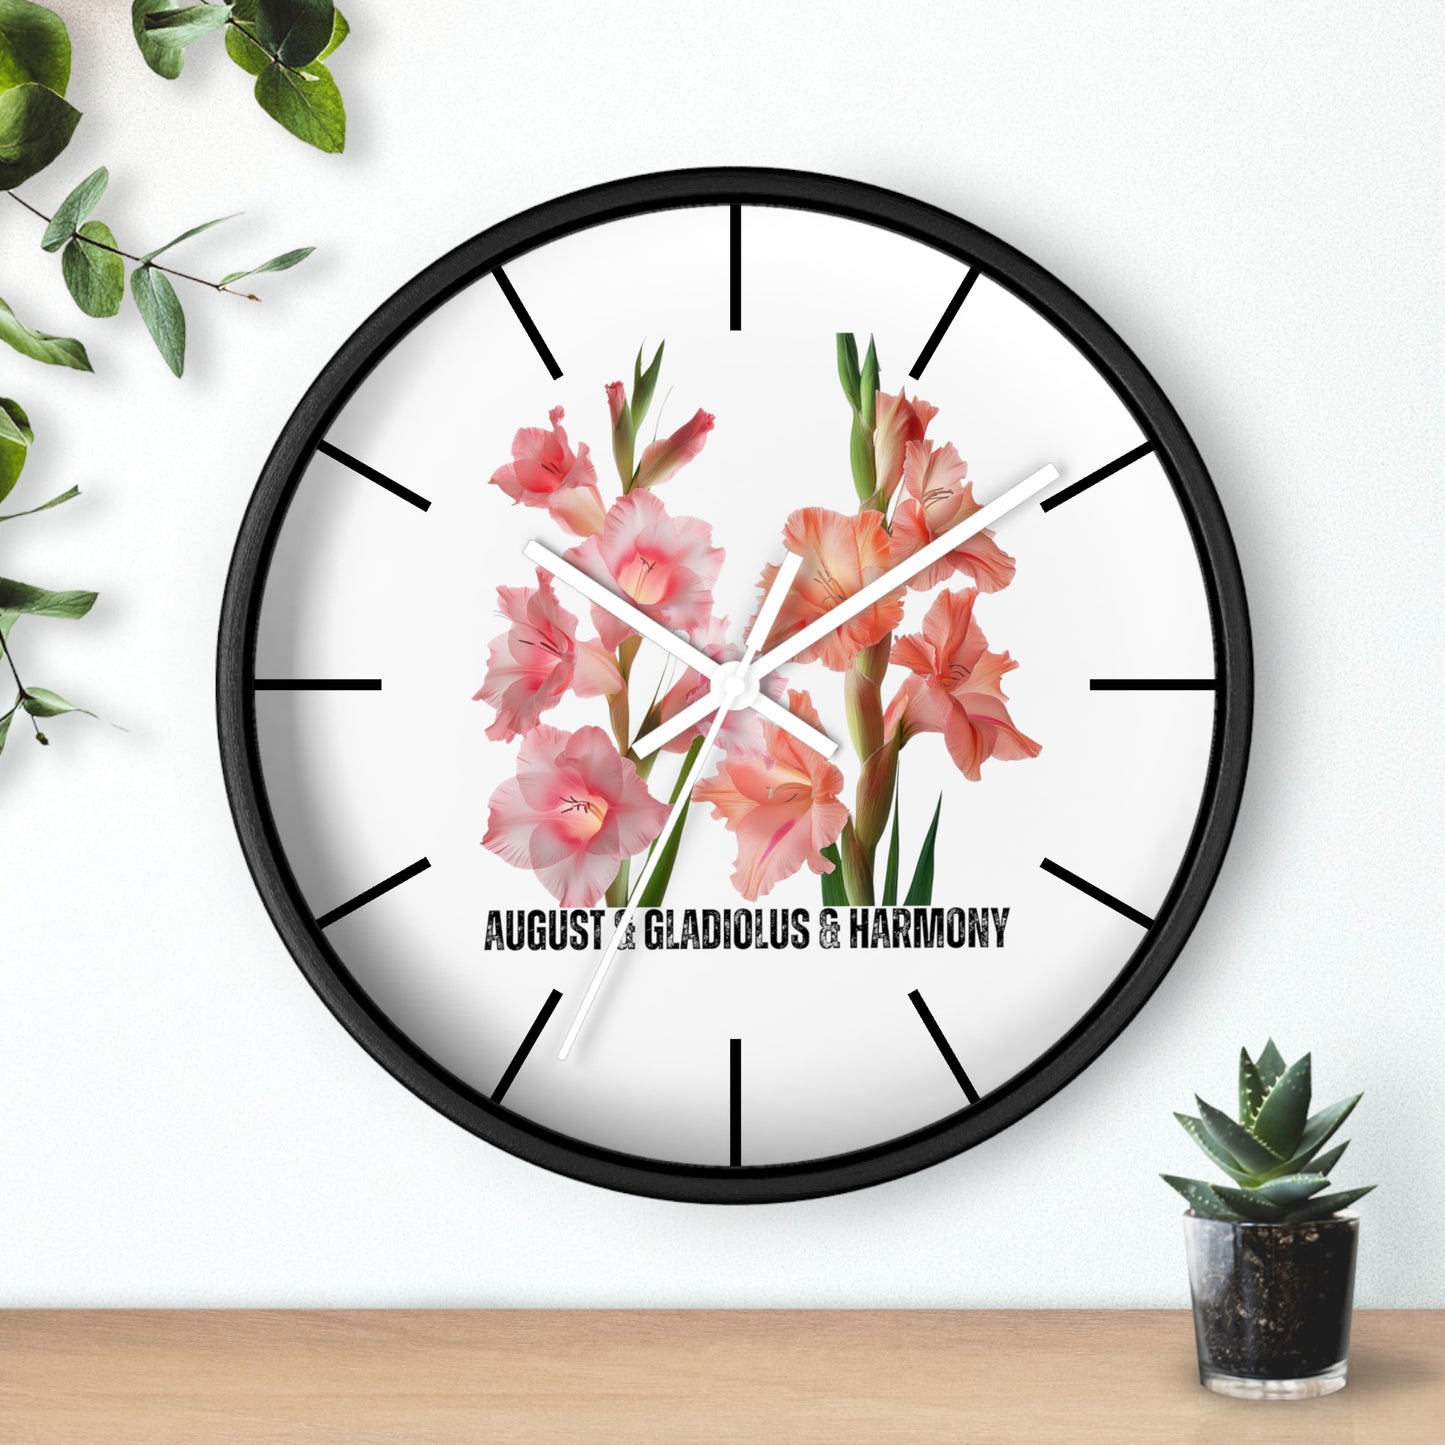 Happy Birthday August, Gladiolus - Wall Clock